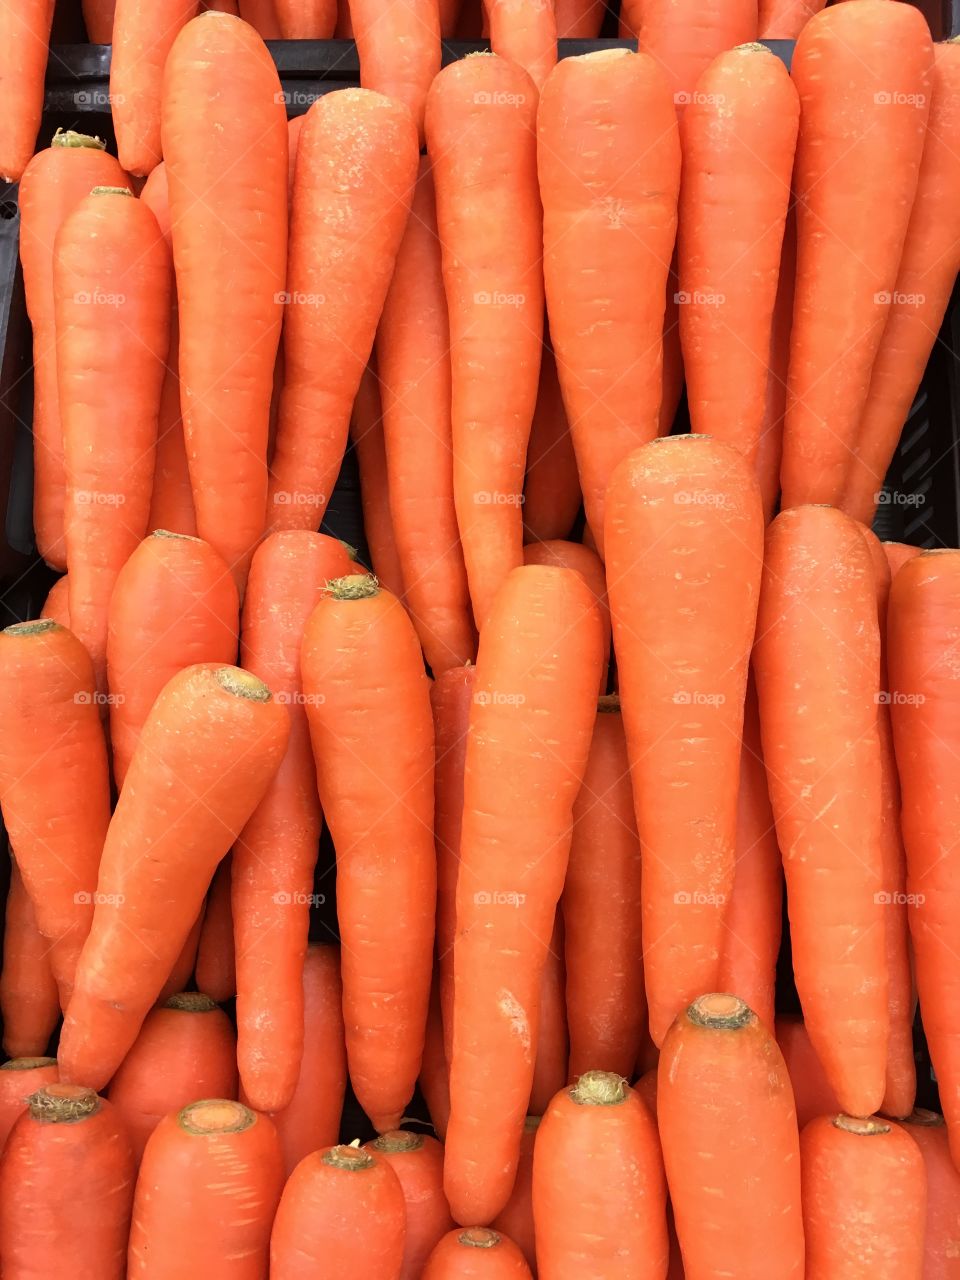 Many carrots